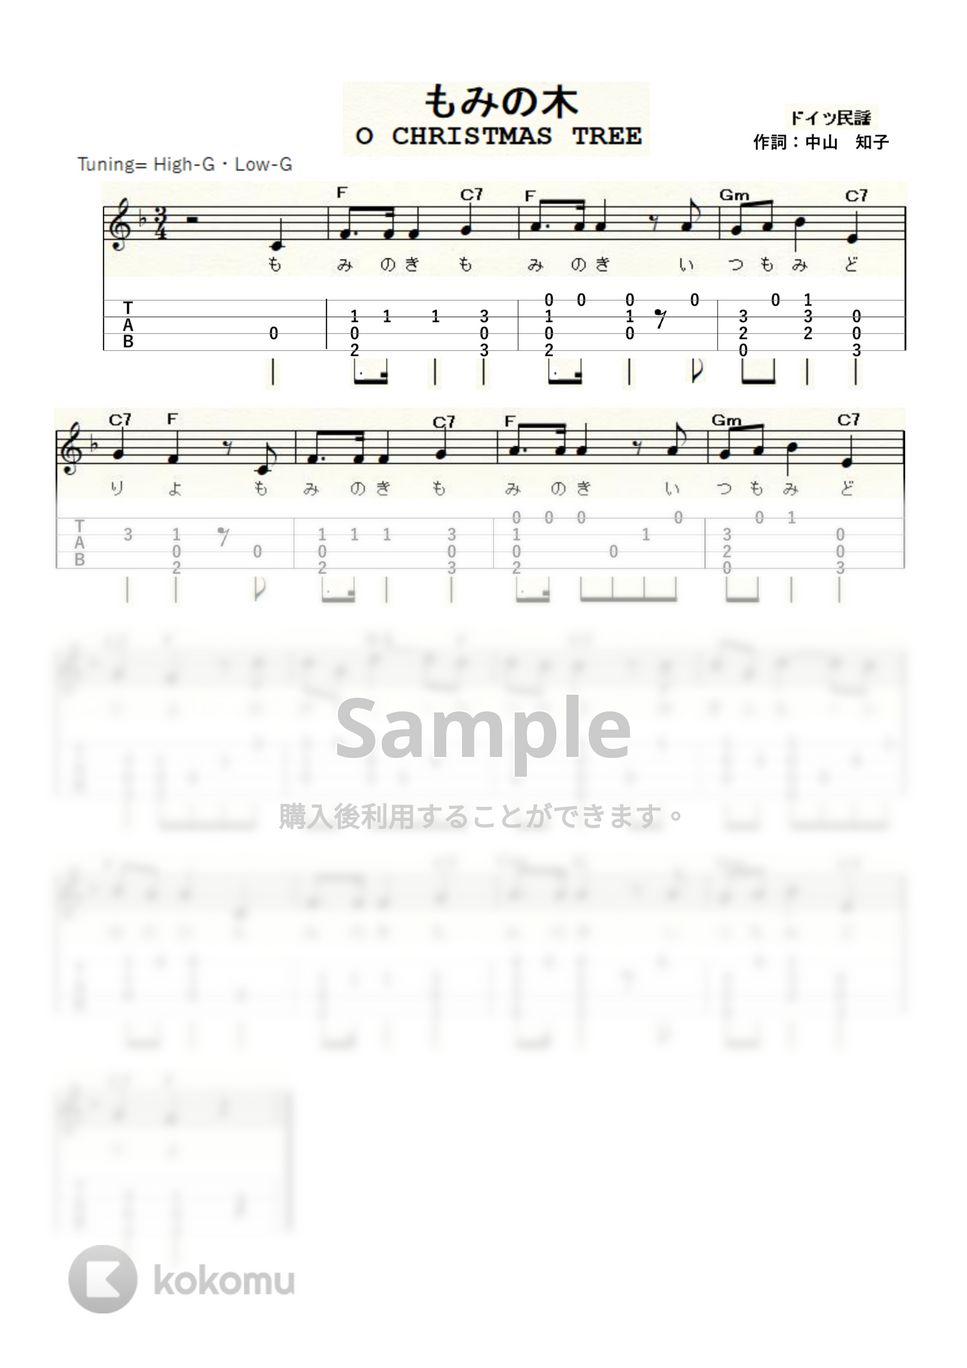 クリスマスソング - もみの木 (ｳｸﾚﾚｿﾛ / High-G,Low-G / 初級) by ukulelepapa